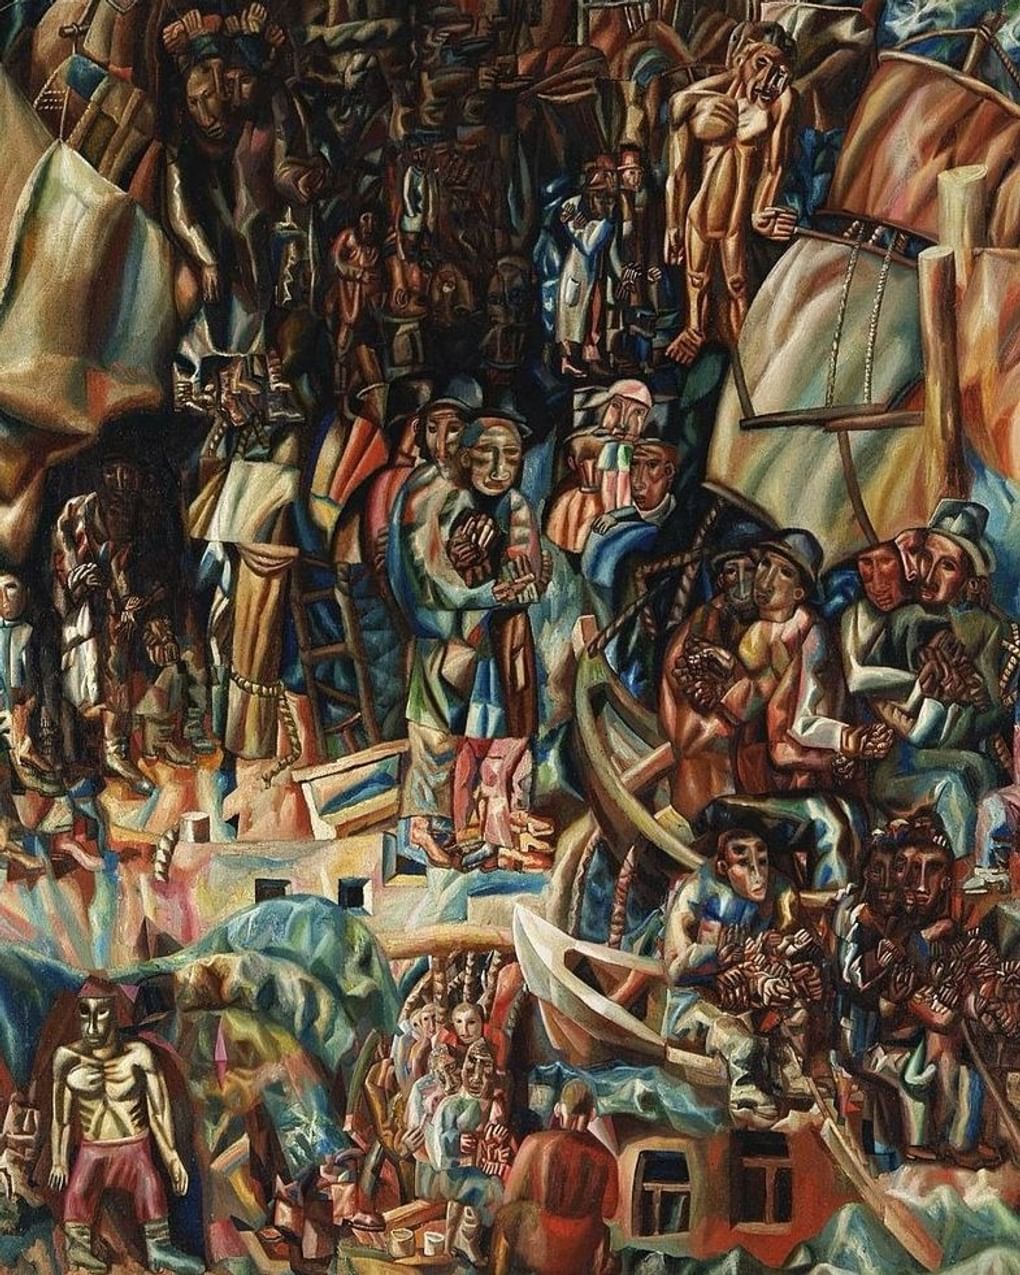 Павел Филонов. Корабли (фрагмент). 1919. Государственная Третьяковская галерея, Москва